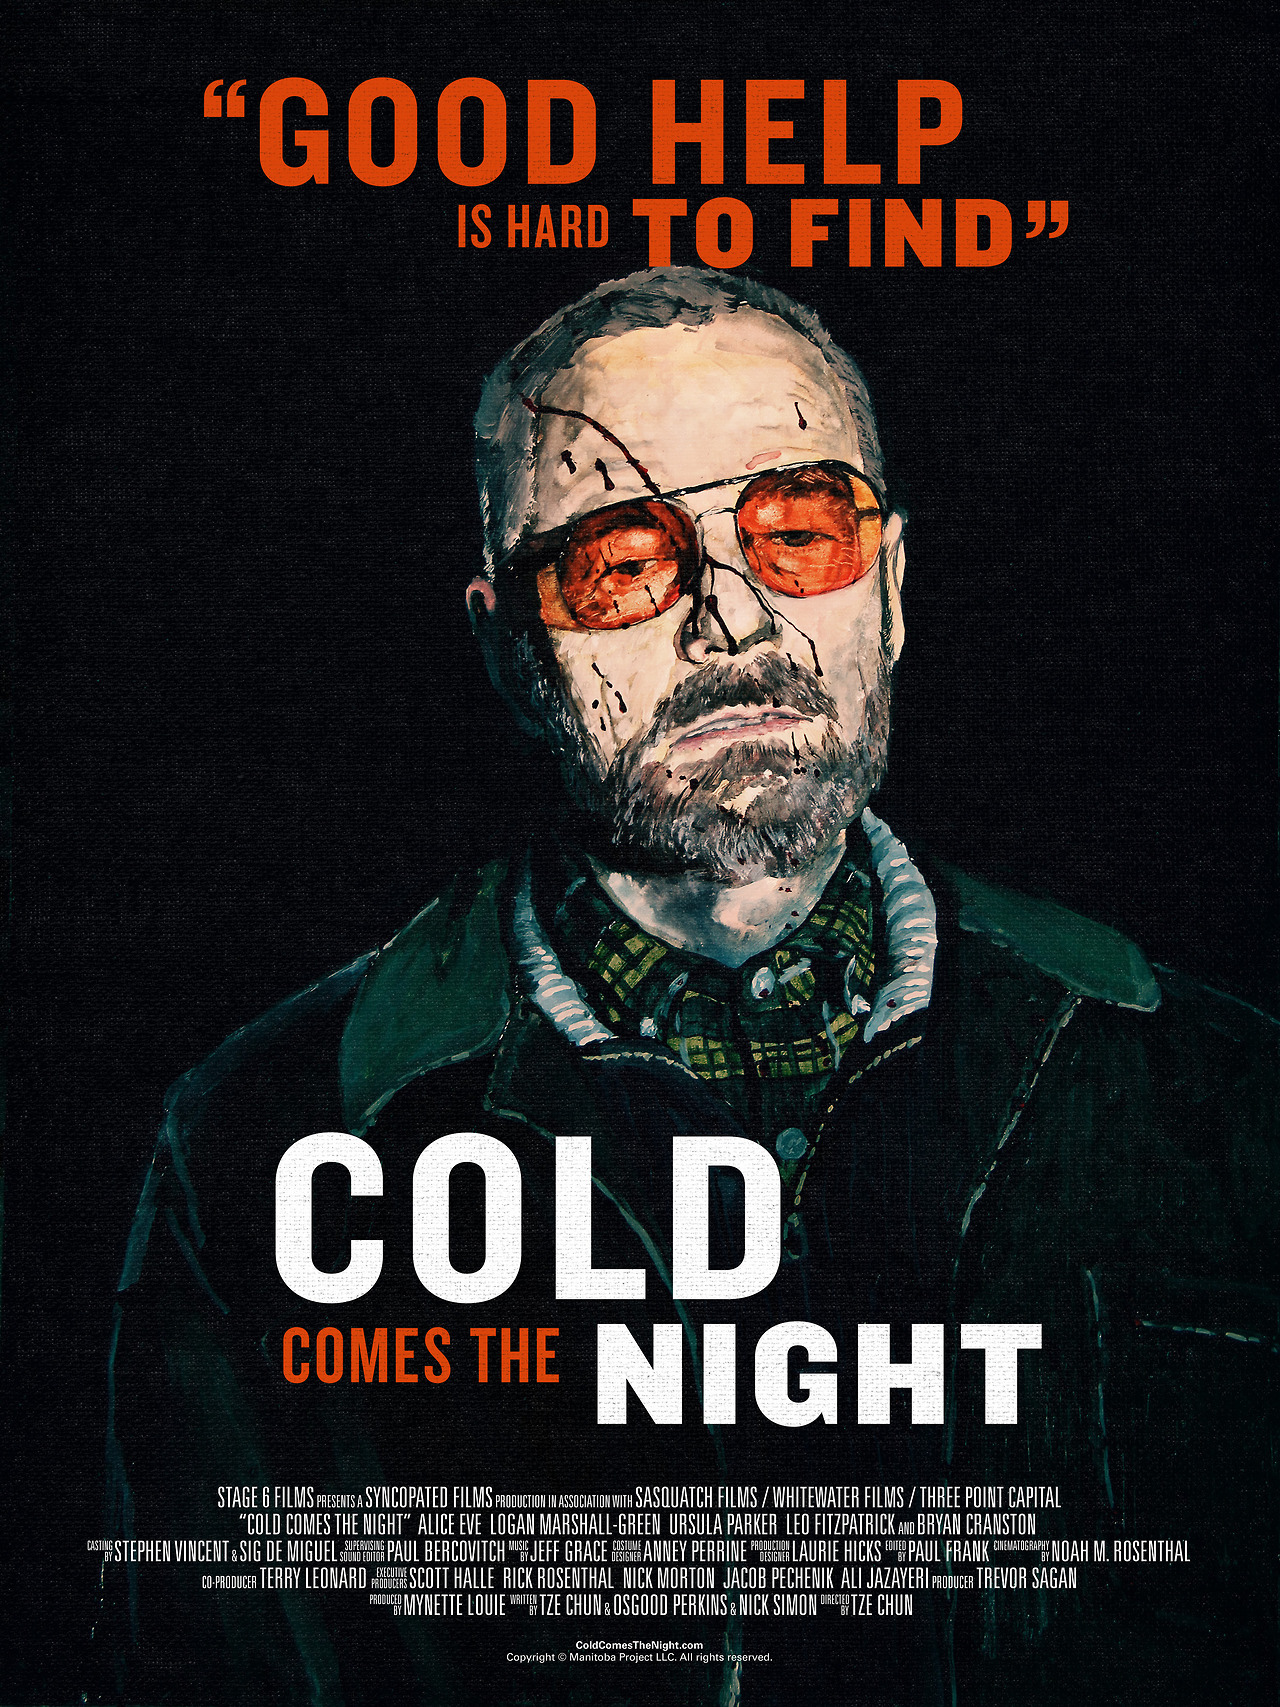 ดูหนังออนไลน์ฟรี Cold Comes the Night (2013) คืนพลิกนรก